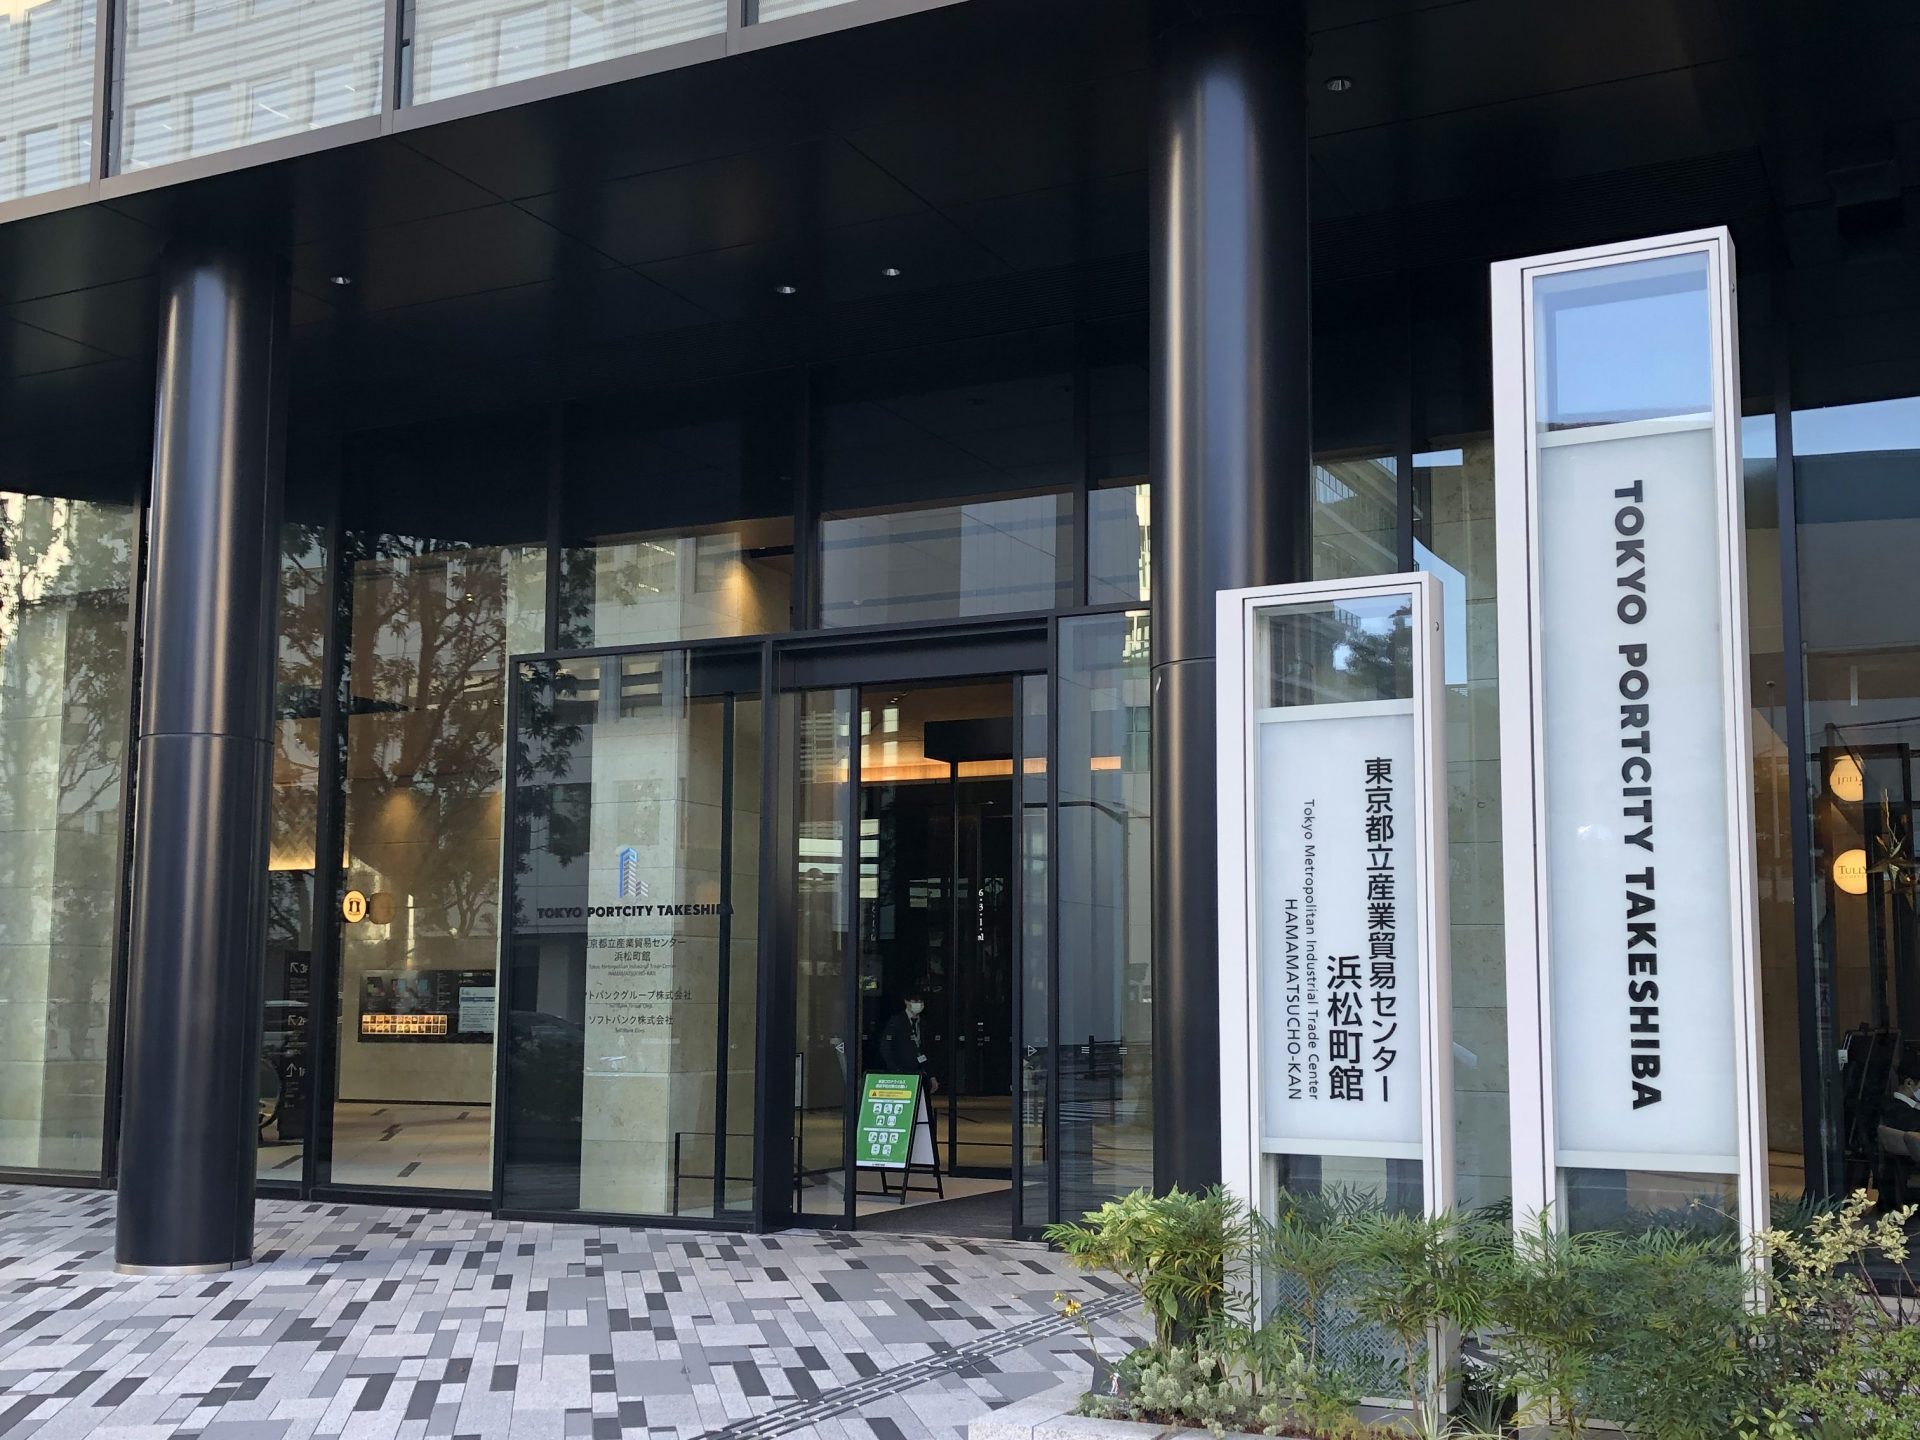 ビジネスエアポート竹芝 横断歩道正面のビル「東京ポートシティ竹芝」の入口より入館